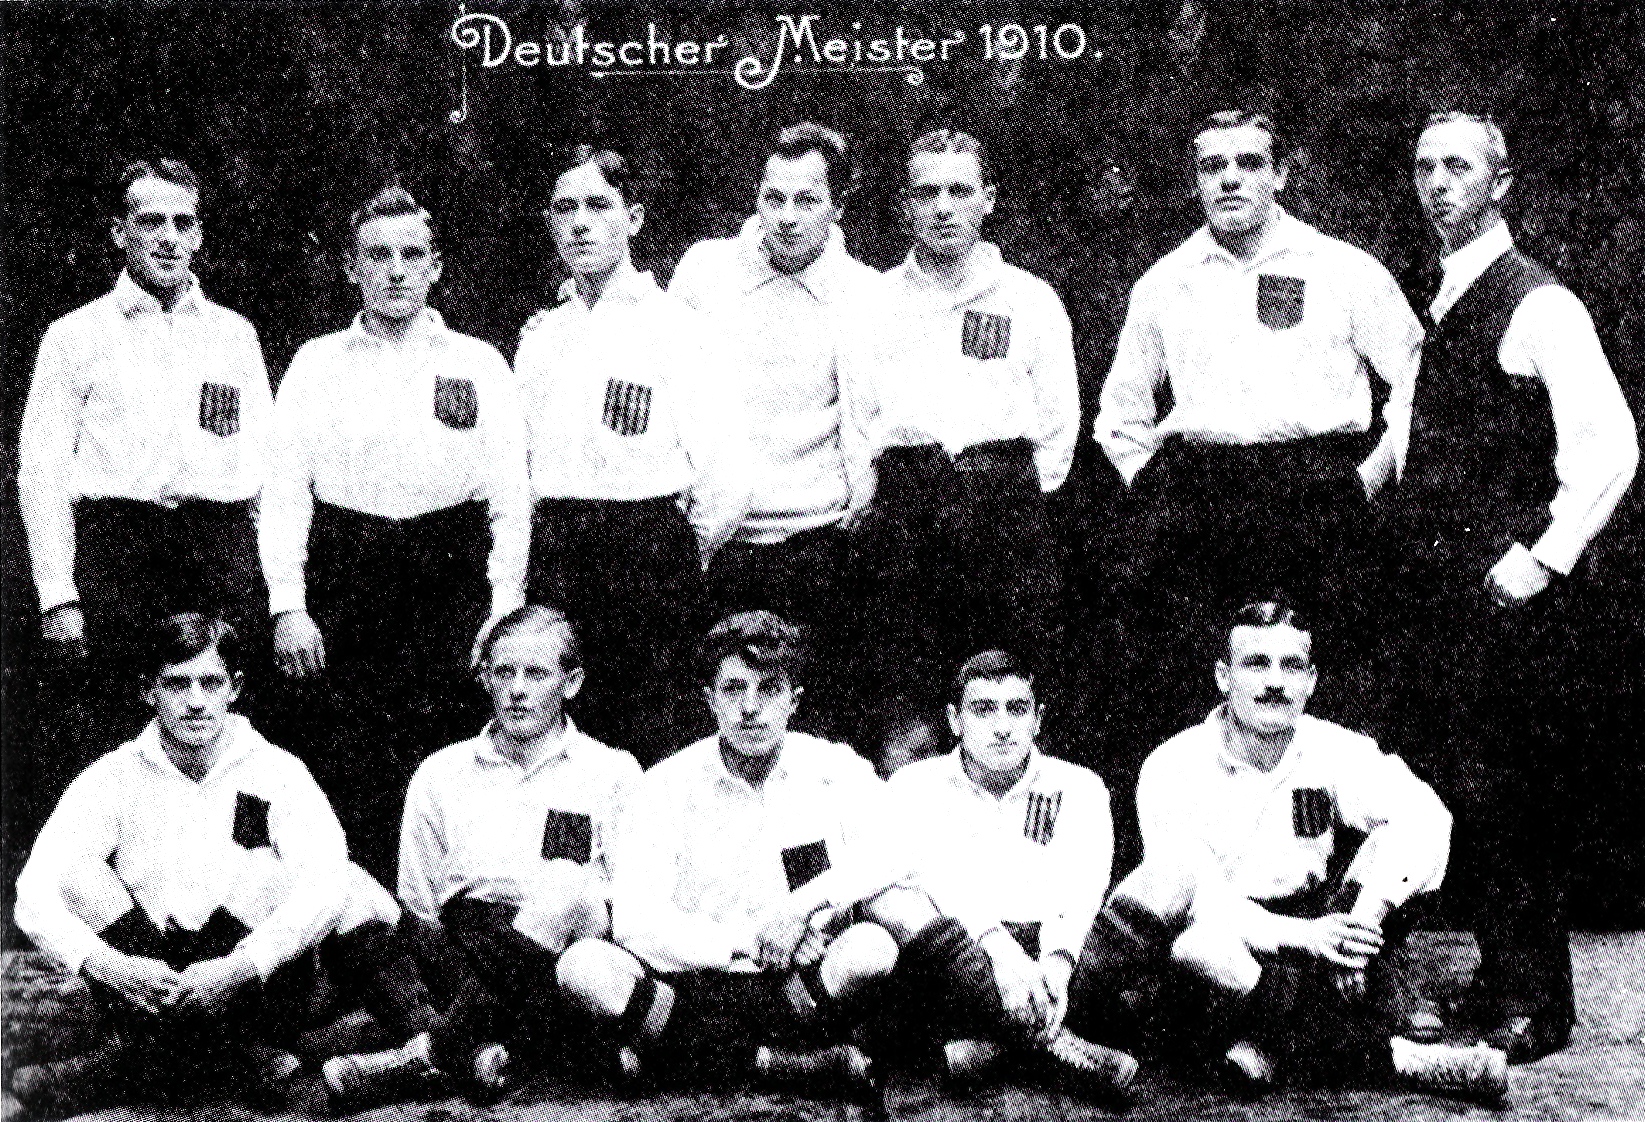 יוליוס הירש (שורה תחתונה, שני מימין) במדי קבוצת הכדורגל קרלסרוהה FV (Karlsruher FV), 1910